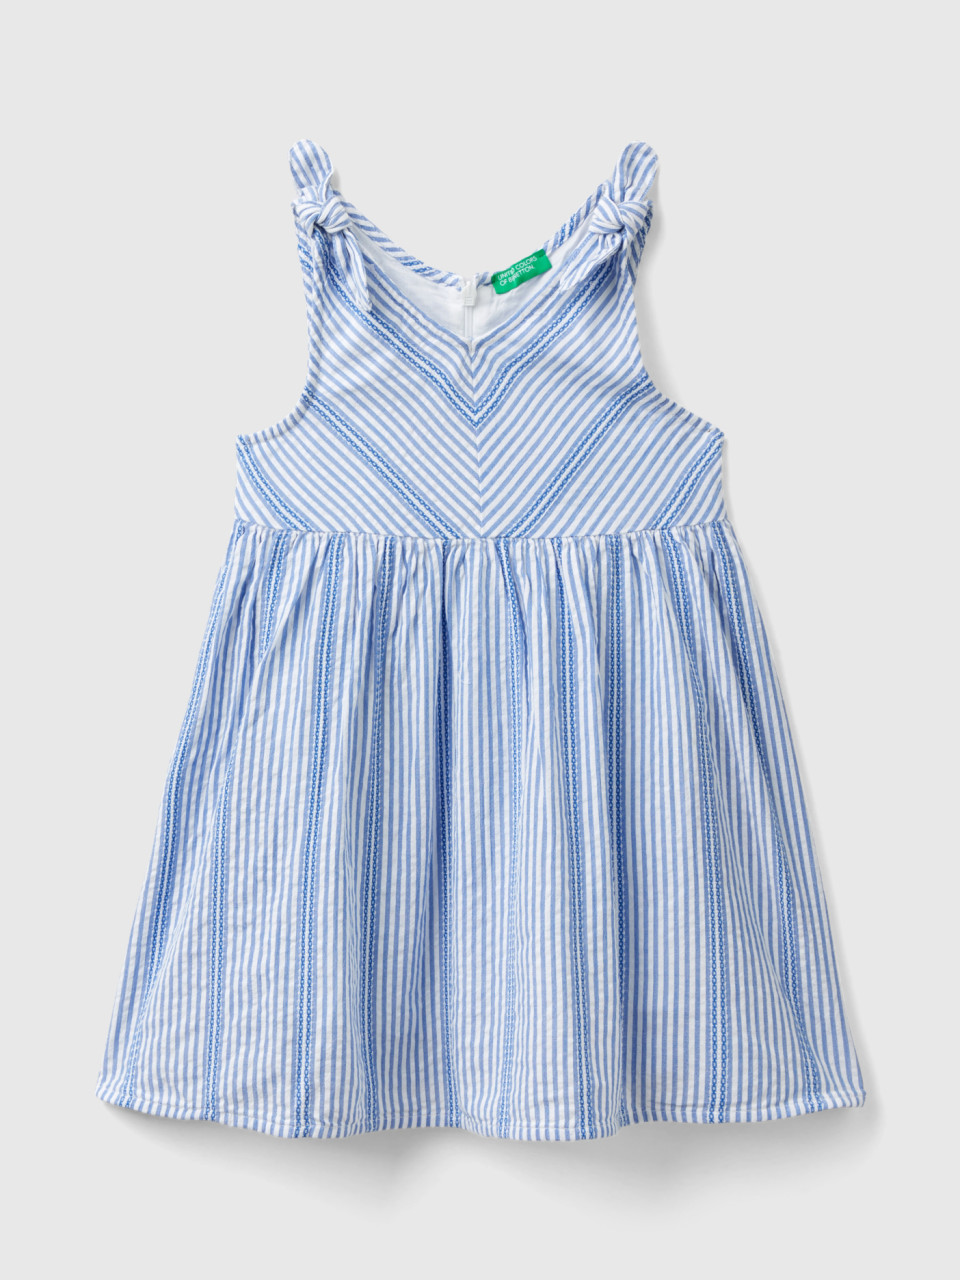 Benetton, Striped Dress In Lightweight Cotton, Light Blue, Kids